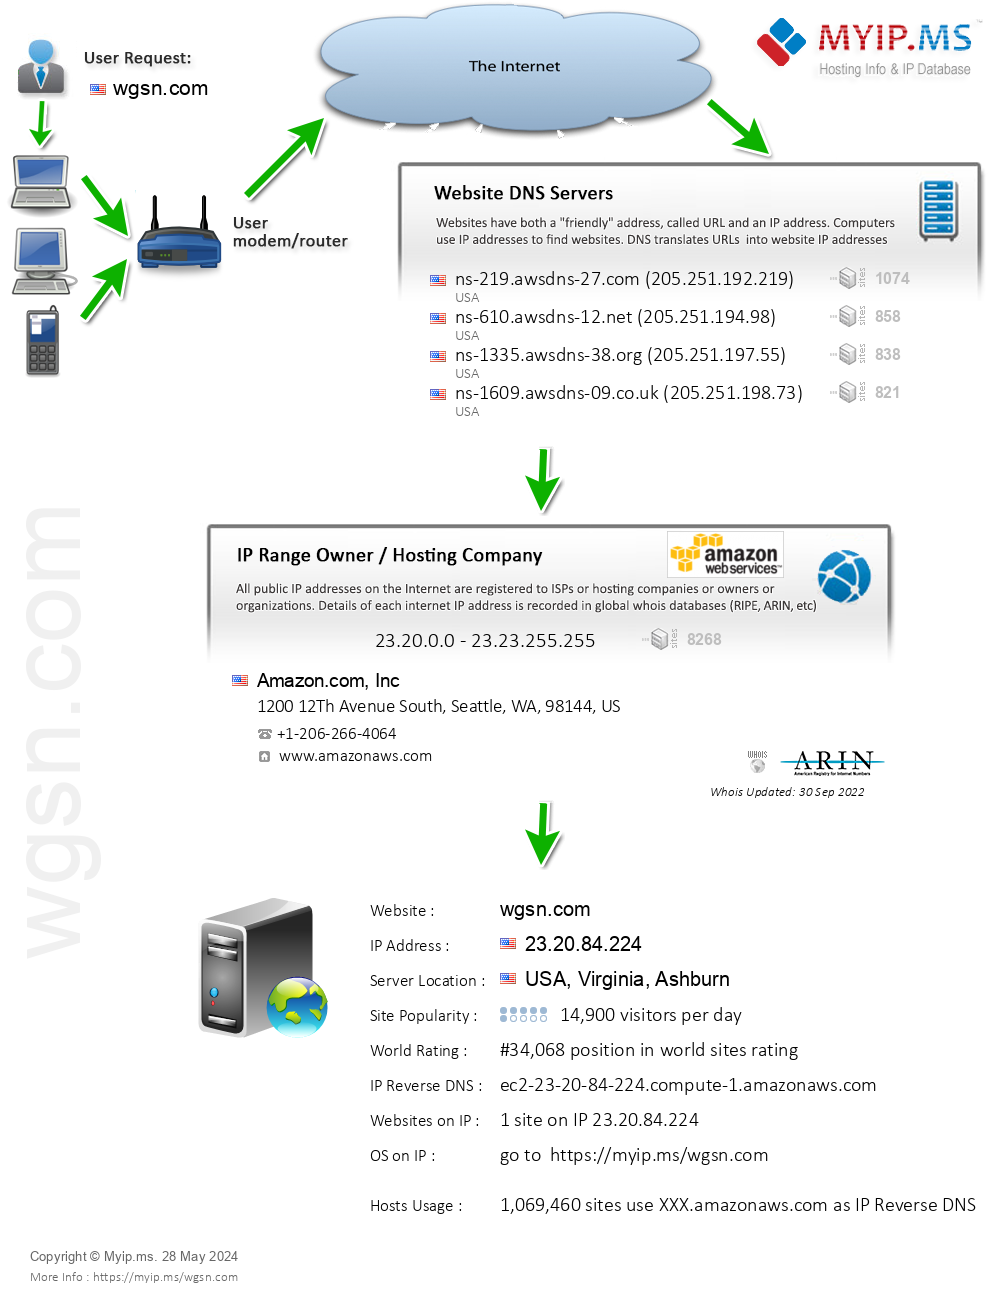 Wgsn.com - Website Hosting Visual IP Diagram